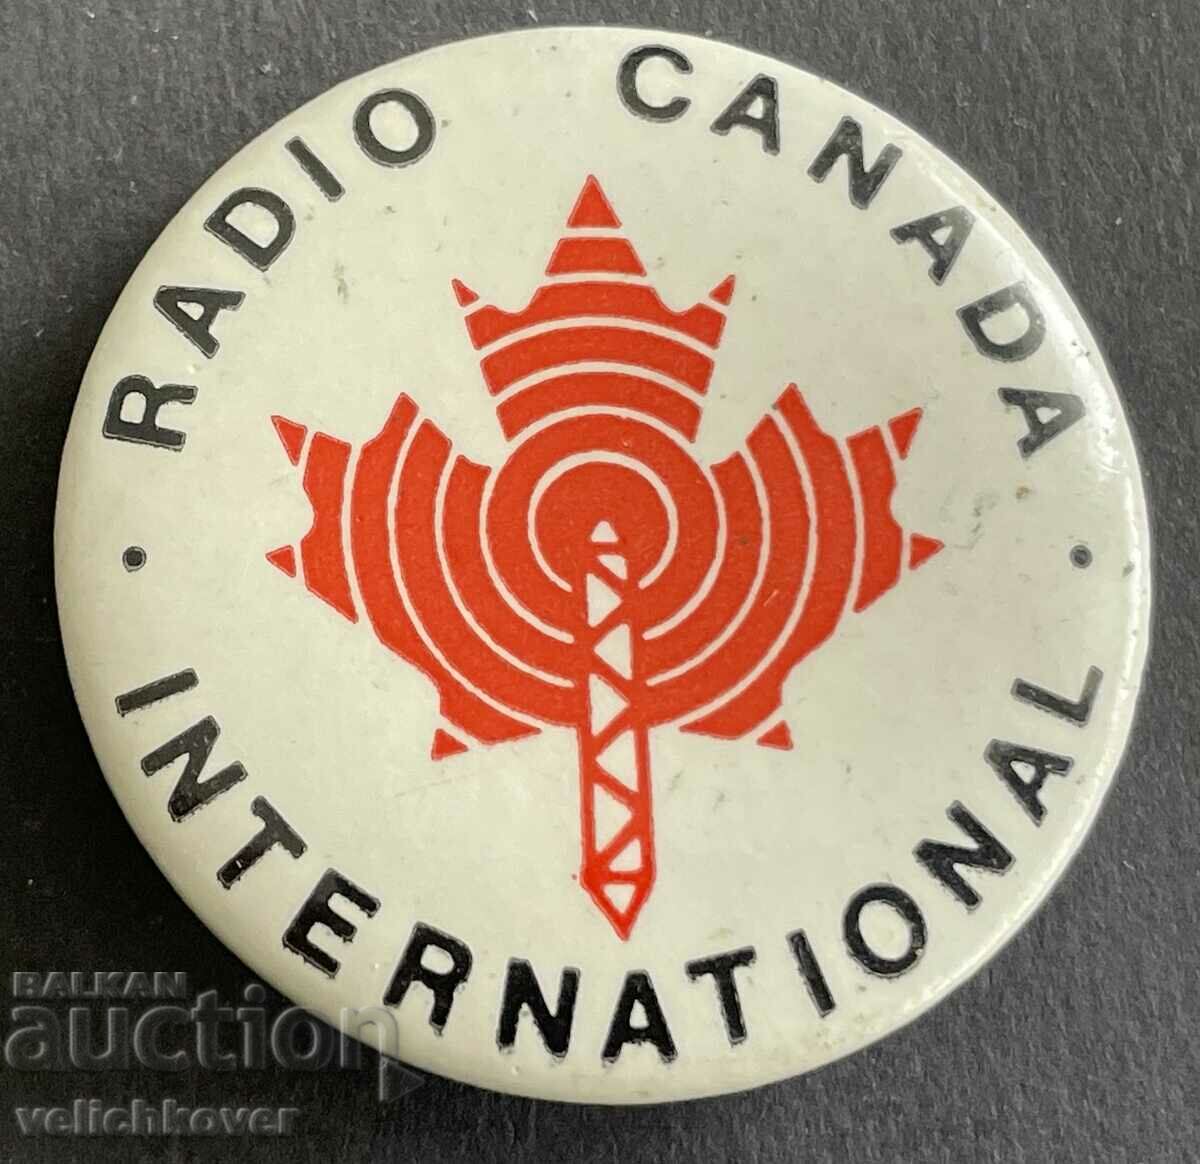 37415 Canada sign Radio Canada International